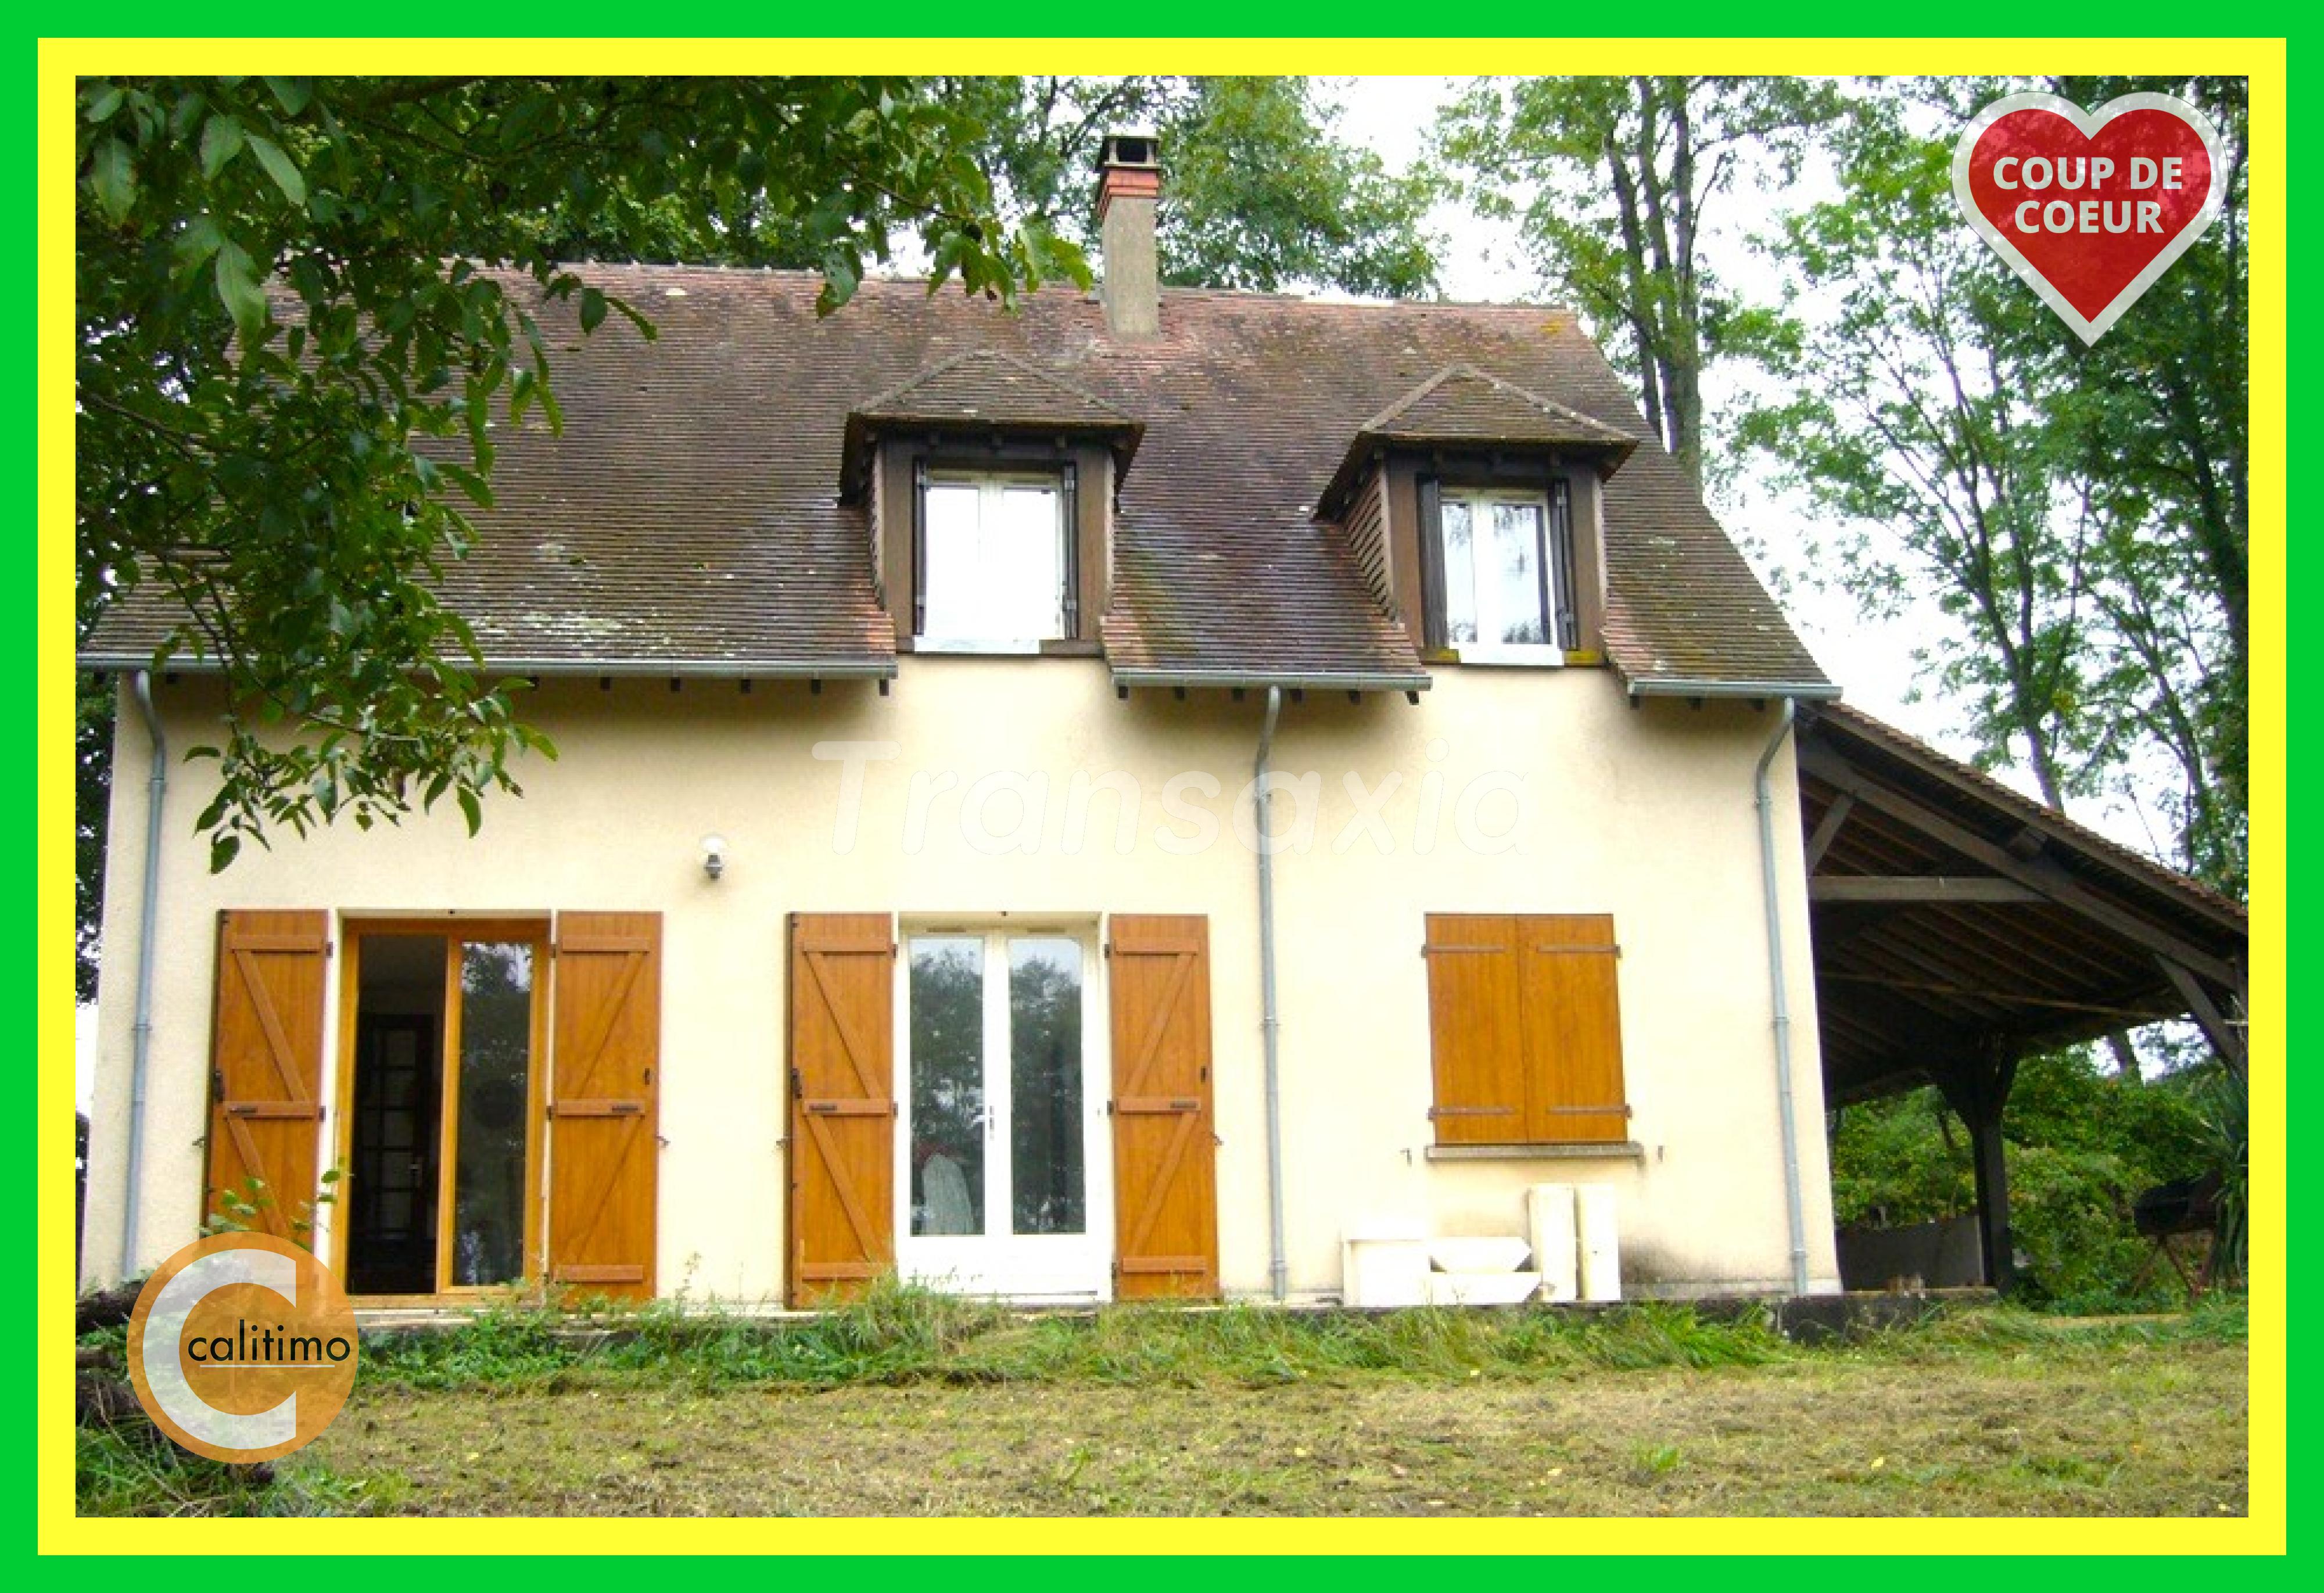 Vente Maison neuve 130 m² à Cosne sur Loire 278 780 €